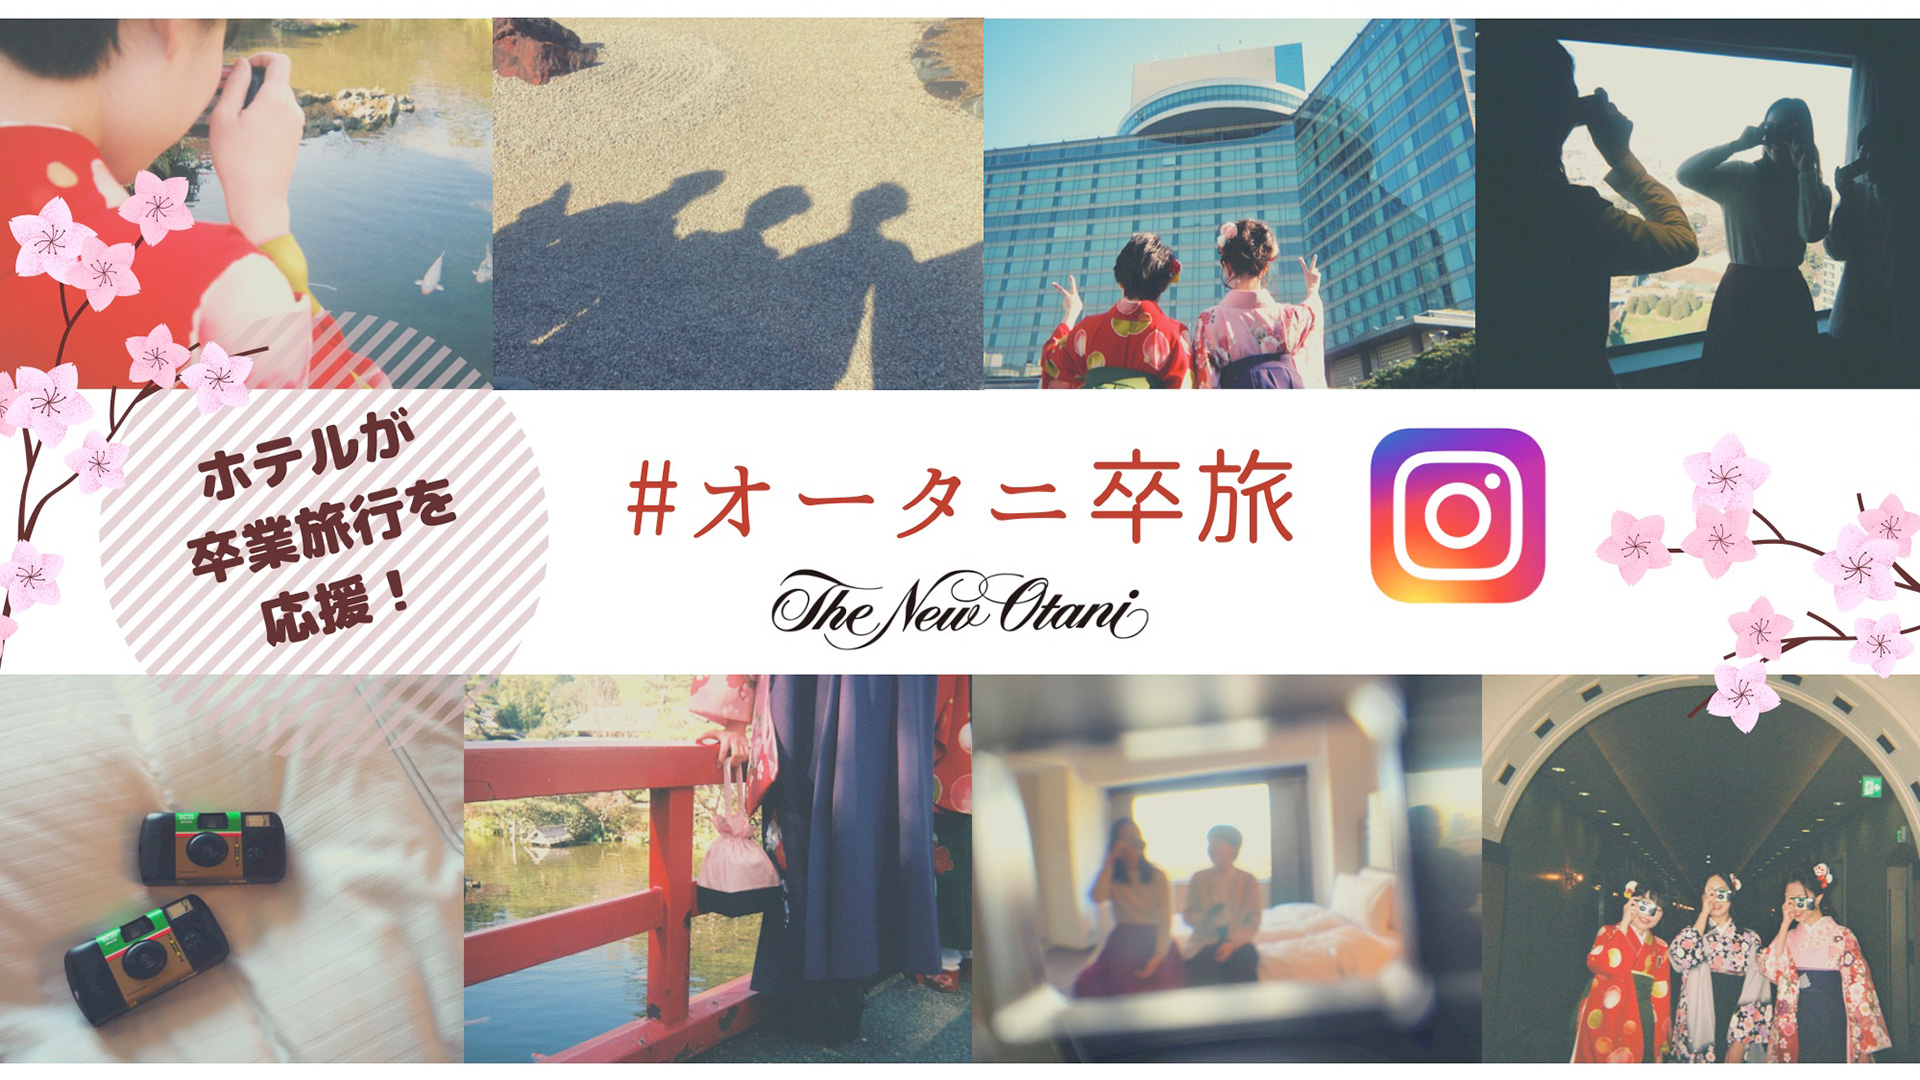 ホテルが卒業旅行を応援！#オータニ卒旅 Instagramキャンペーン